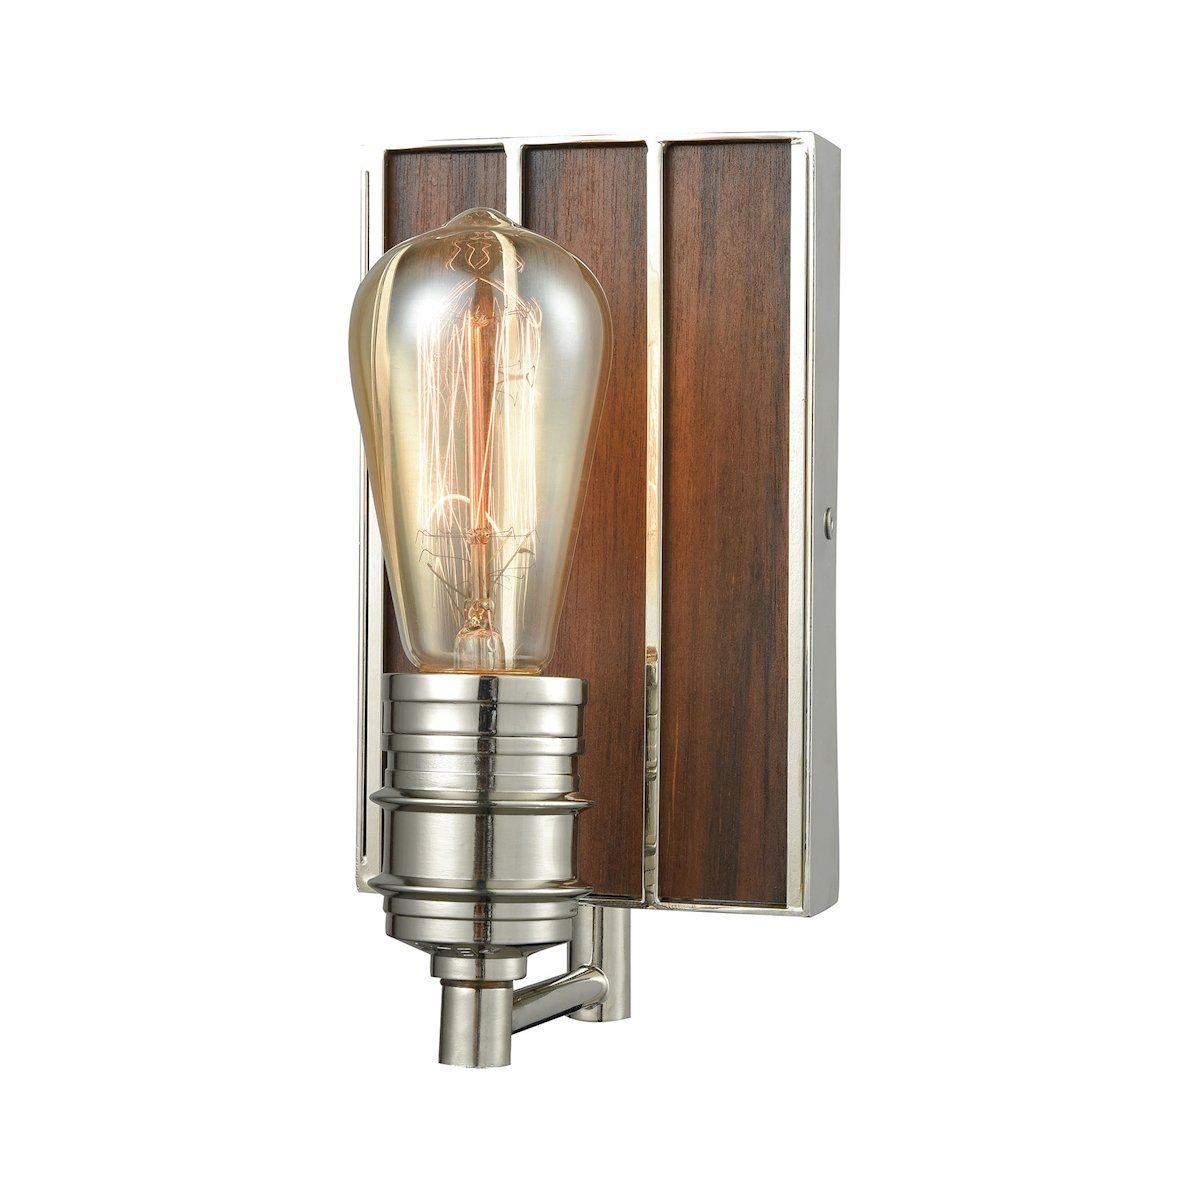 Brookweiler 1 Light Vanity In Polished Nickel With Dark Wood Backplate Wall Elk Lighting 